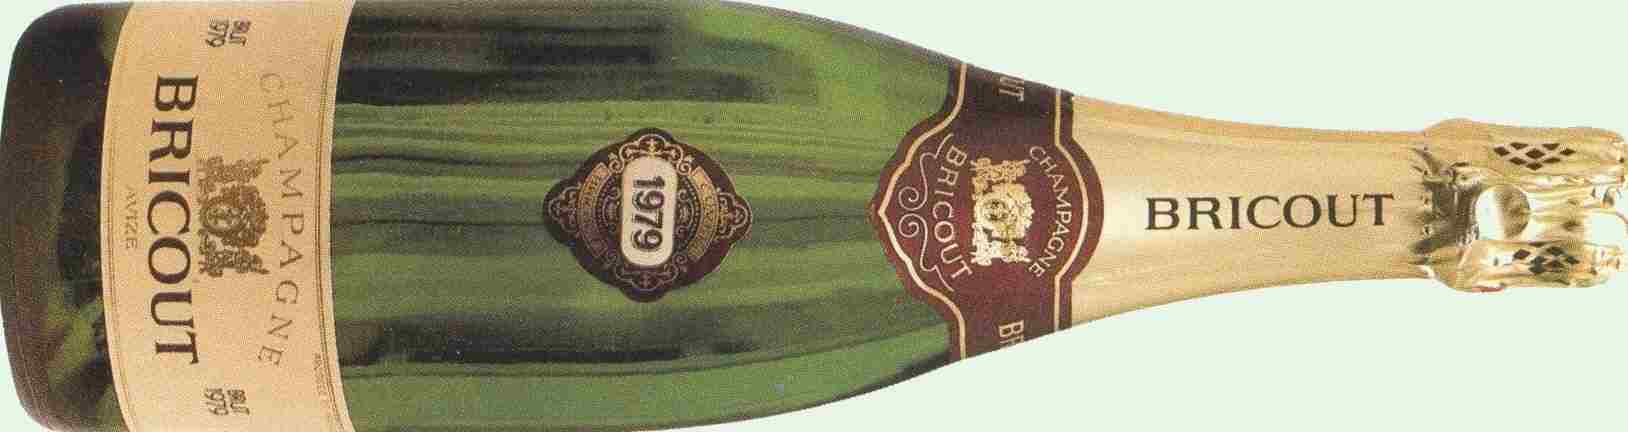 Histoire du Champagne Bricout fond� en 1966 ------> 